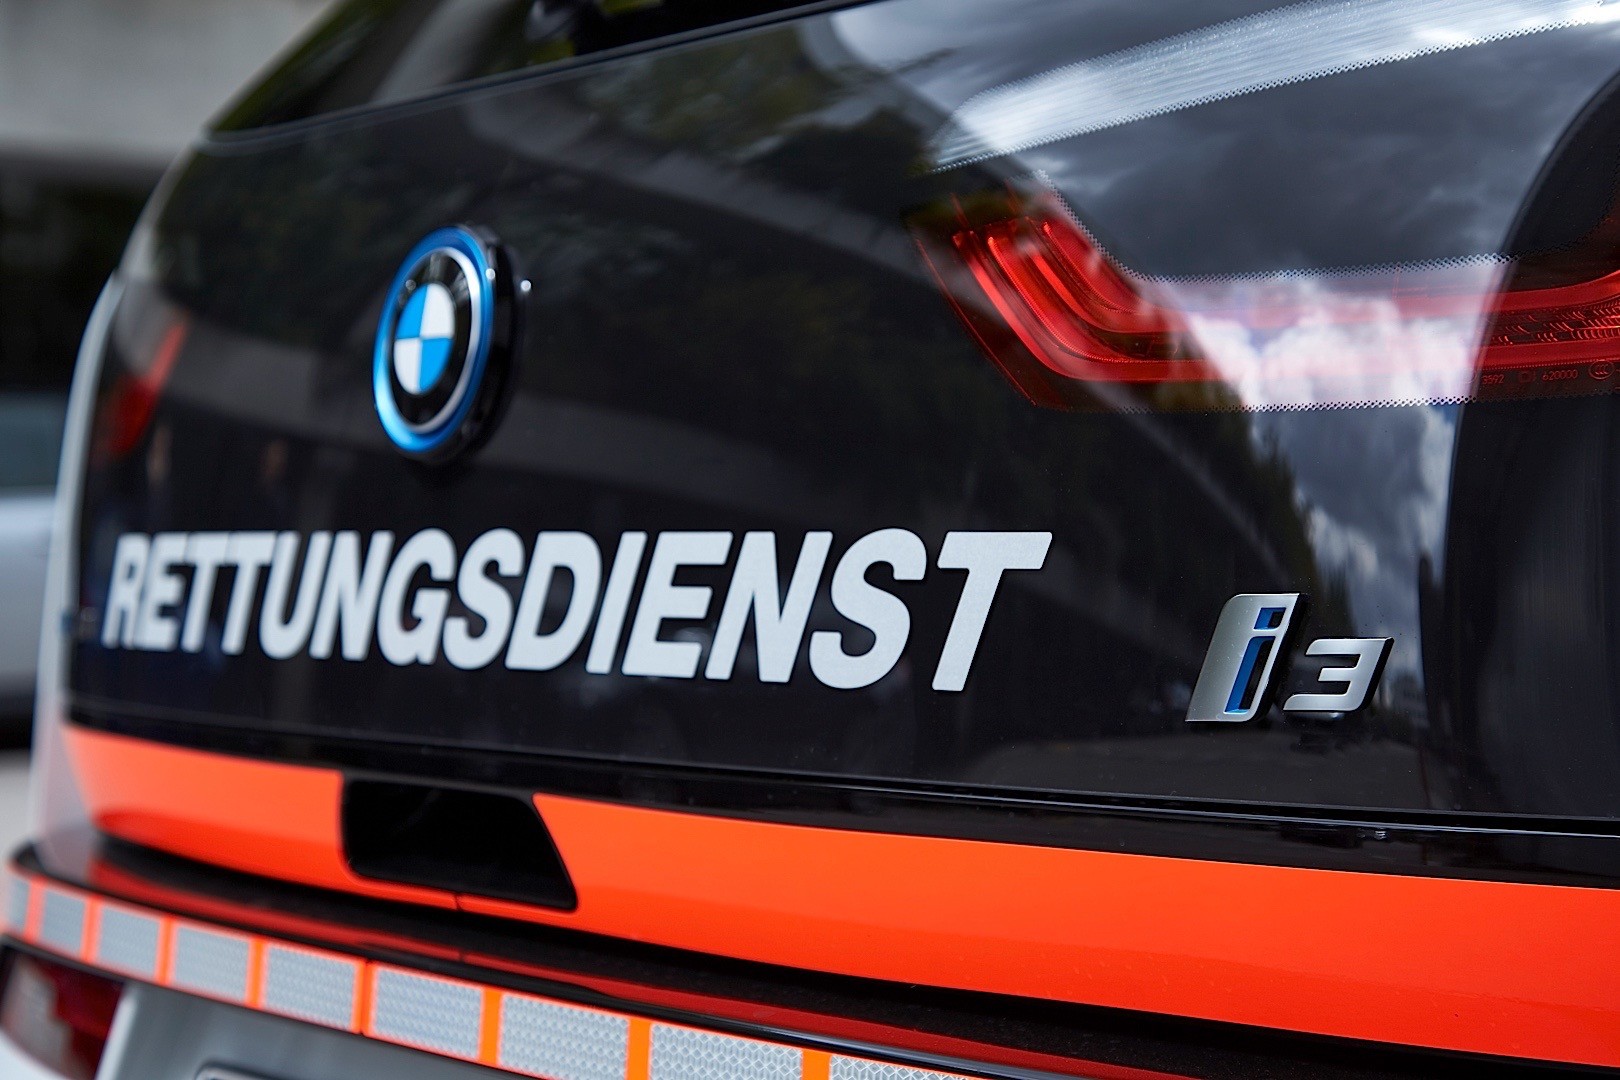 2015 BMW 2 Series Gran Tourer Tested: Go Big or Go Home ...